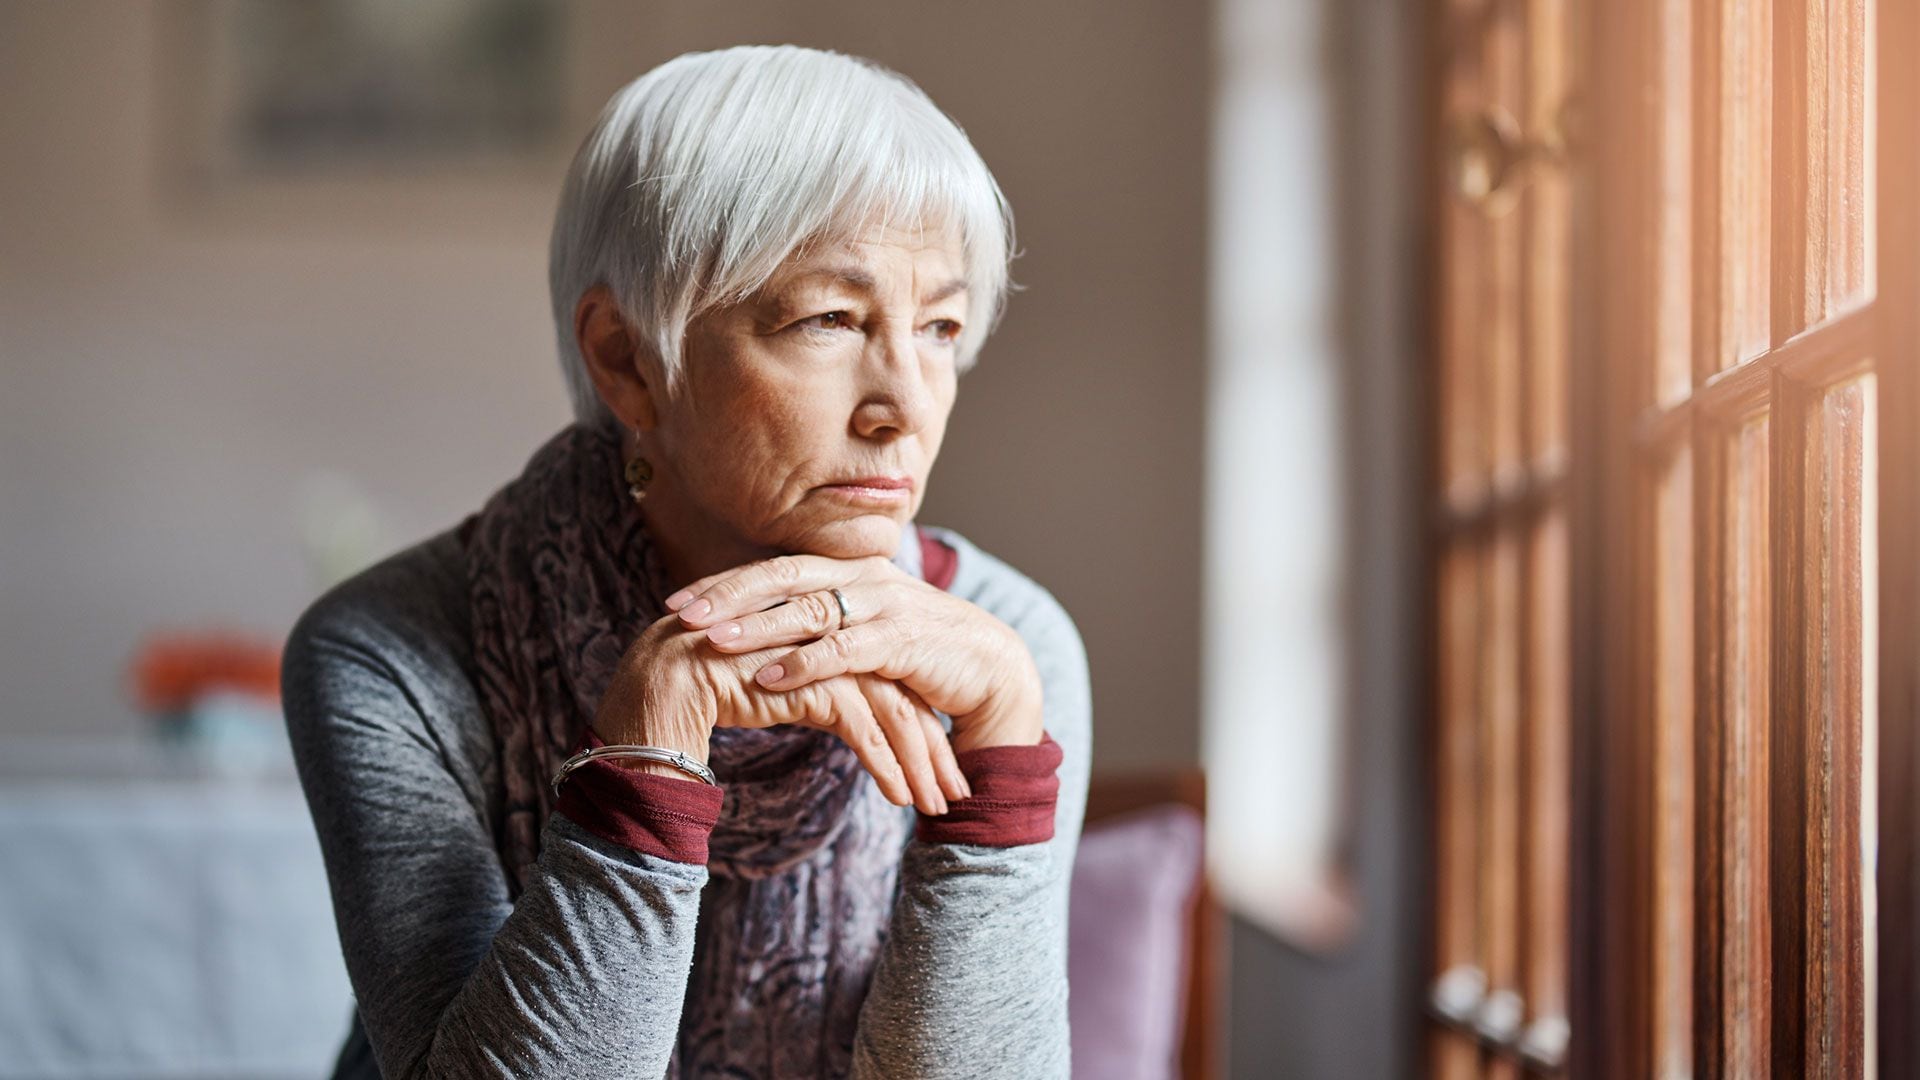 El impacto de las estafas en adultos mayores va más allá de lo financiero, dejando cicatrices emocionales duraderas en las víctimas